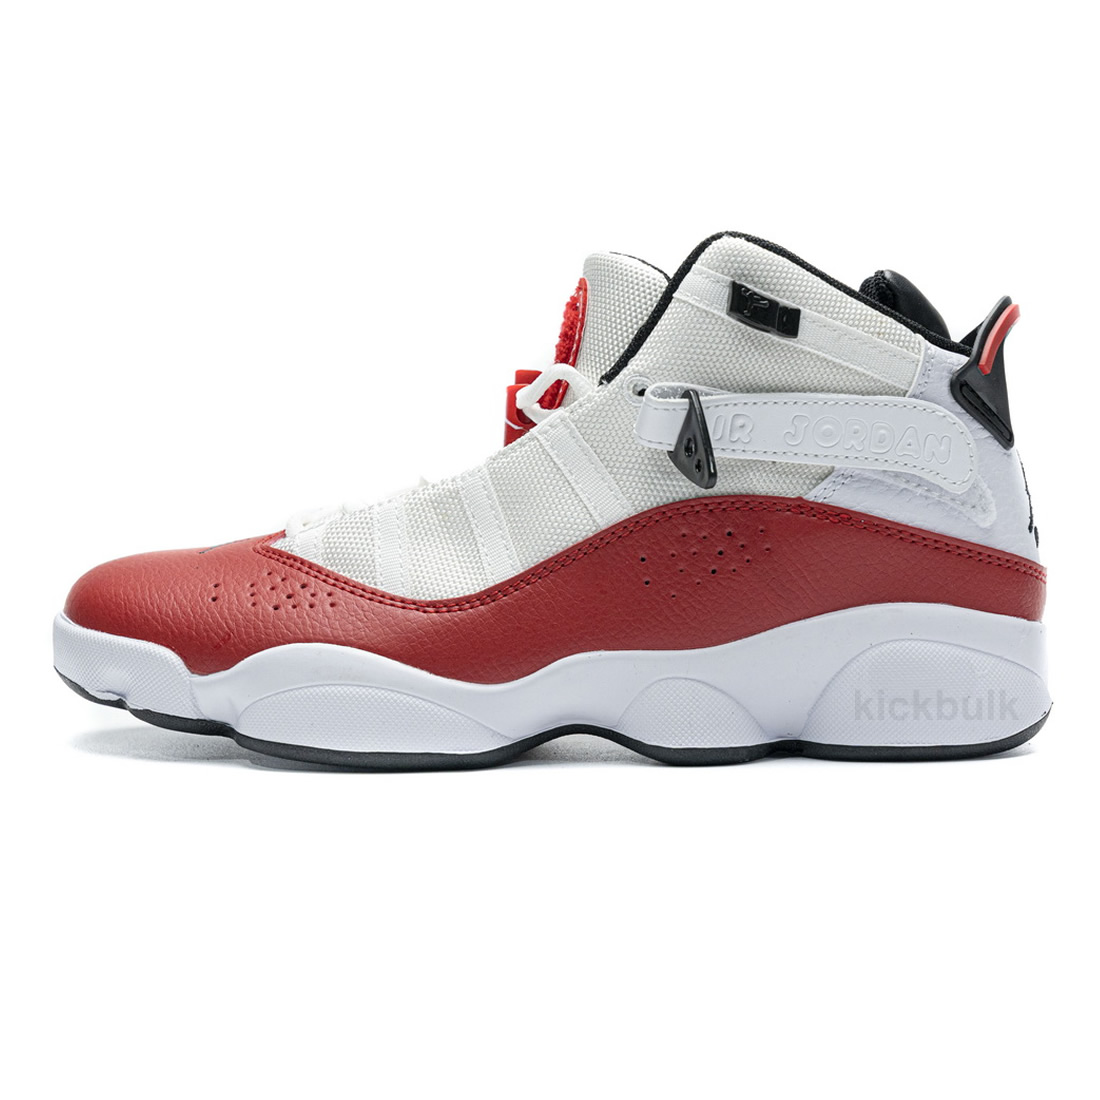 Nike Jordan 6 Rings Bg Basketball Shoes White Red Lifestyle 323419 120 1 - kickbulk.org